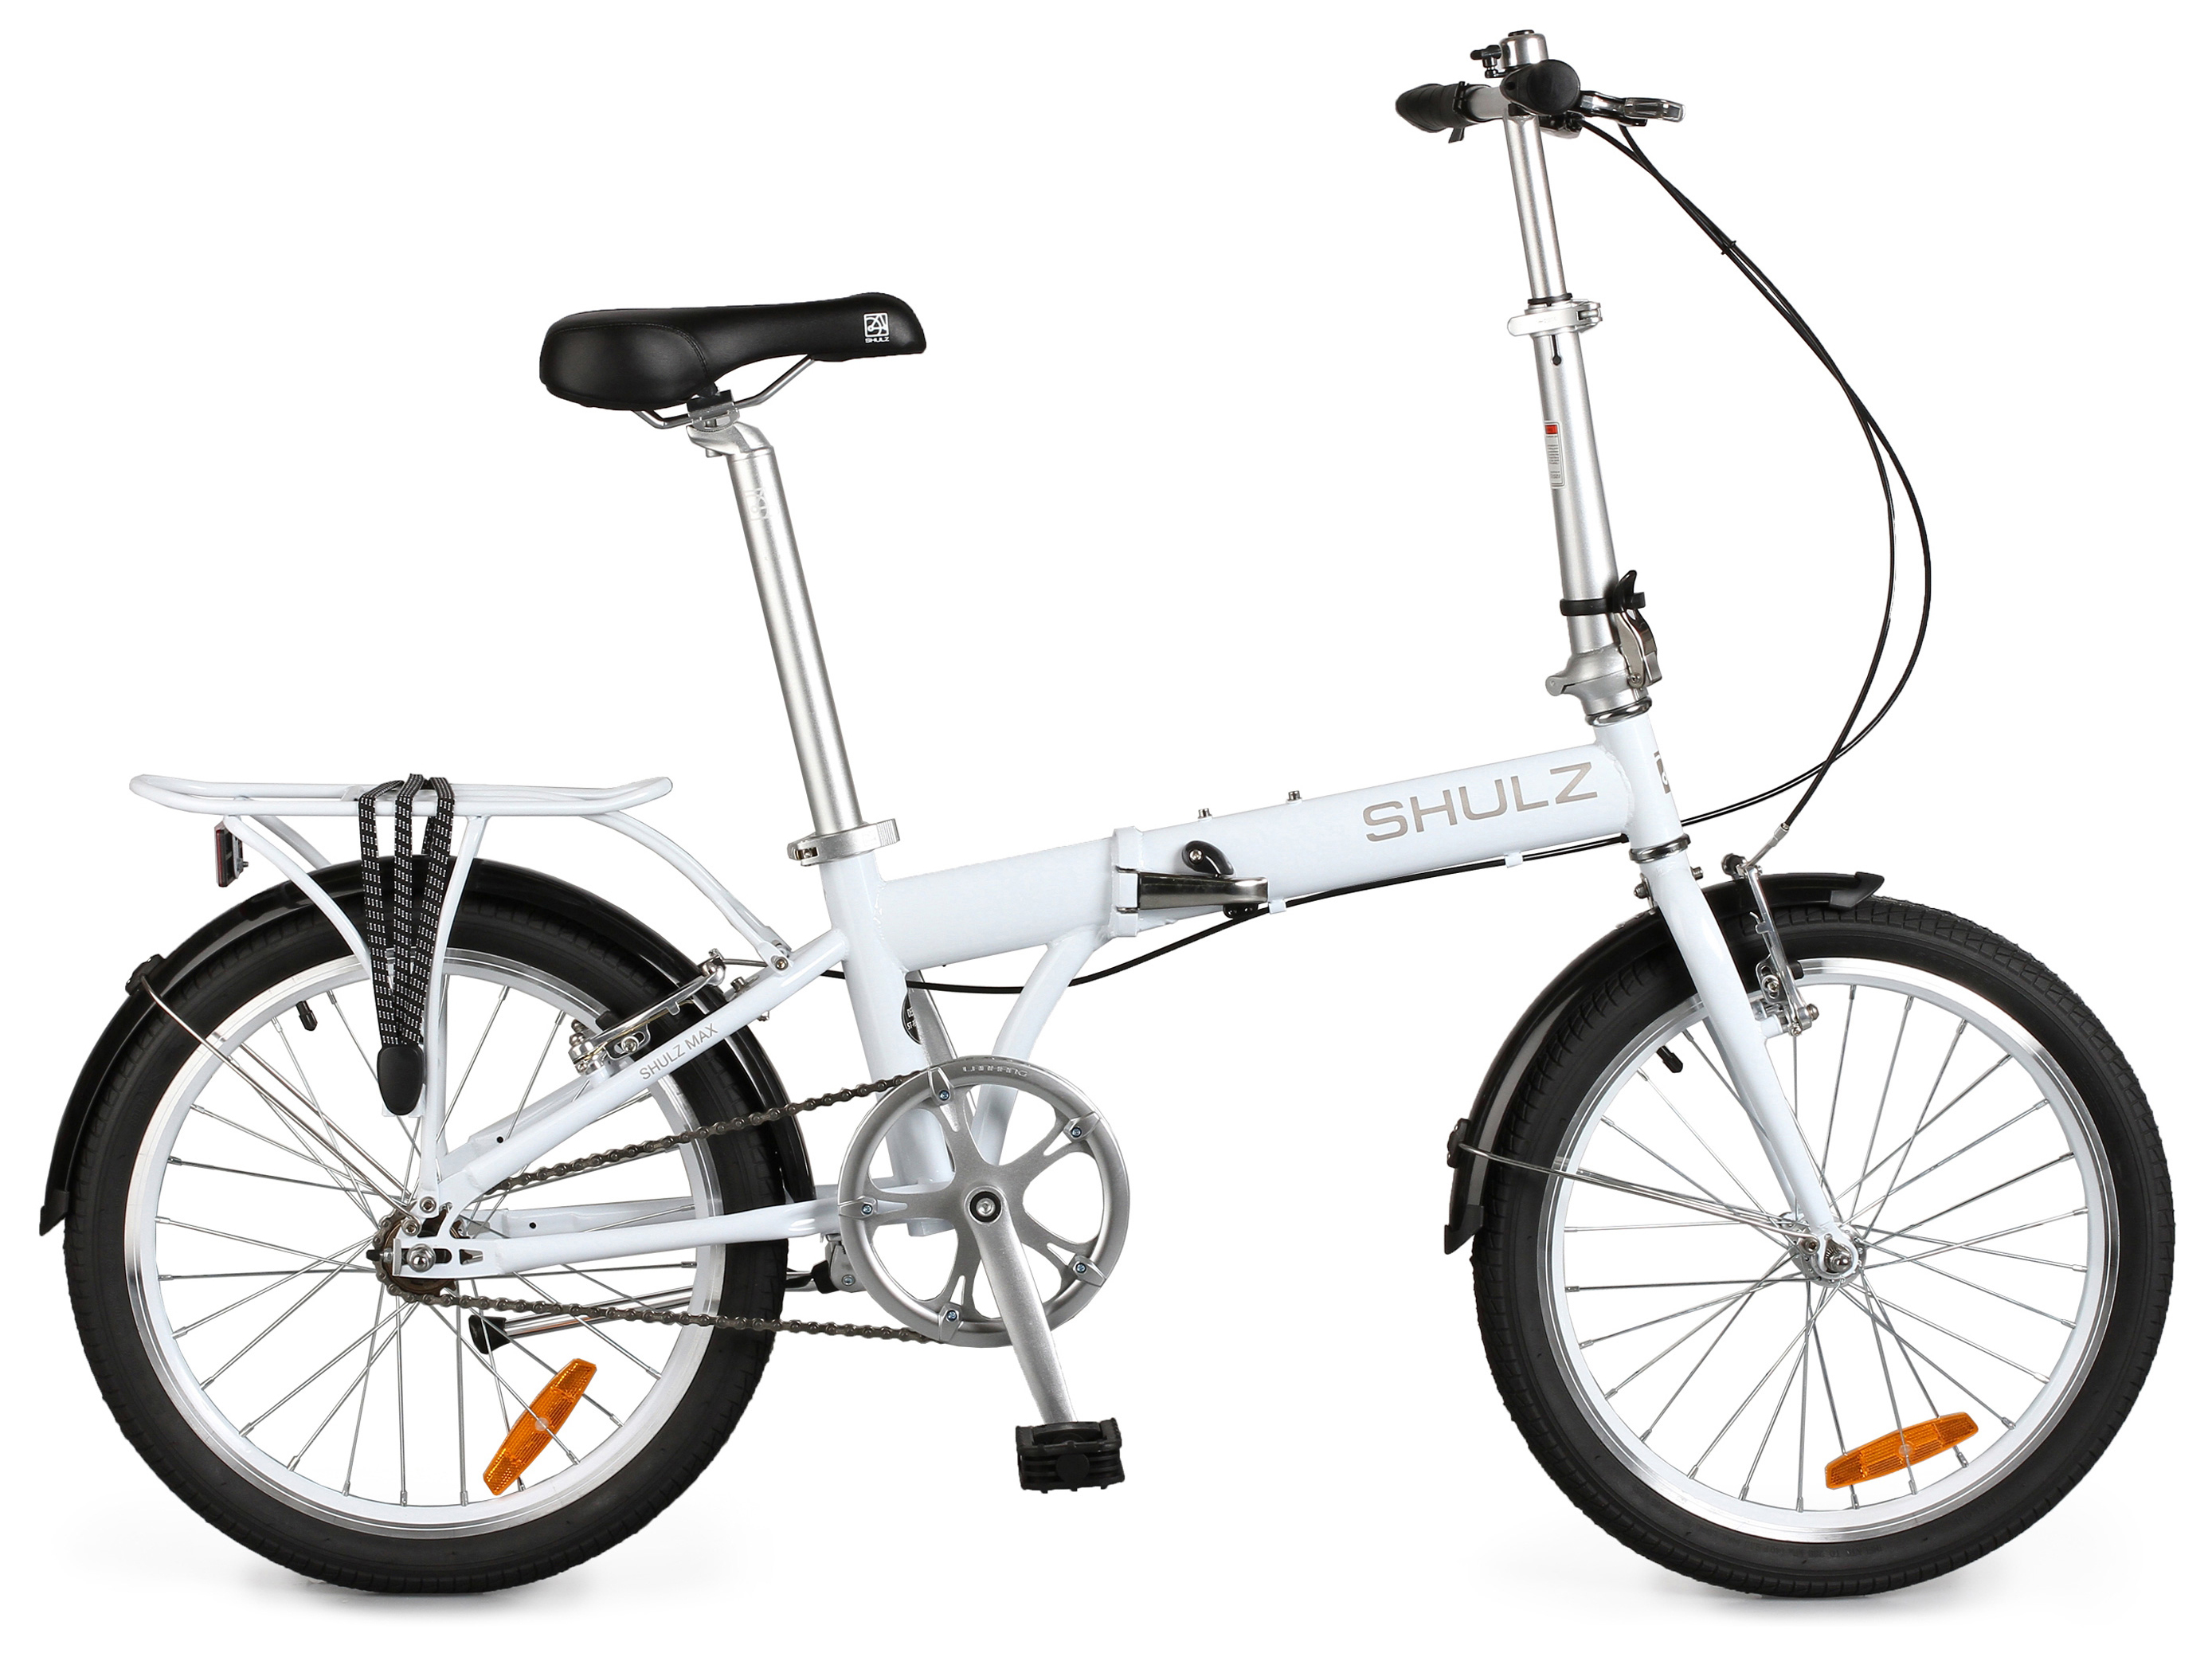  Велосипед Shulz Max 2020